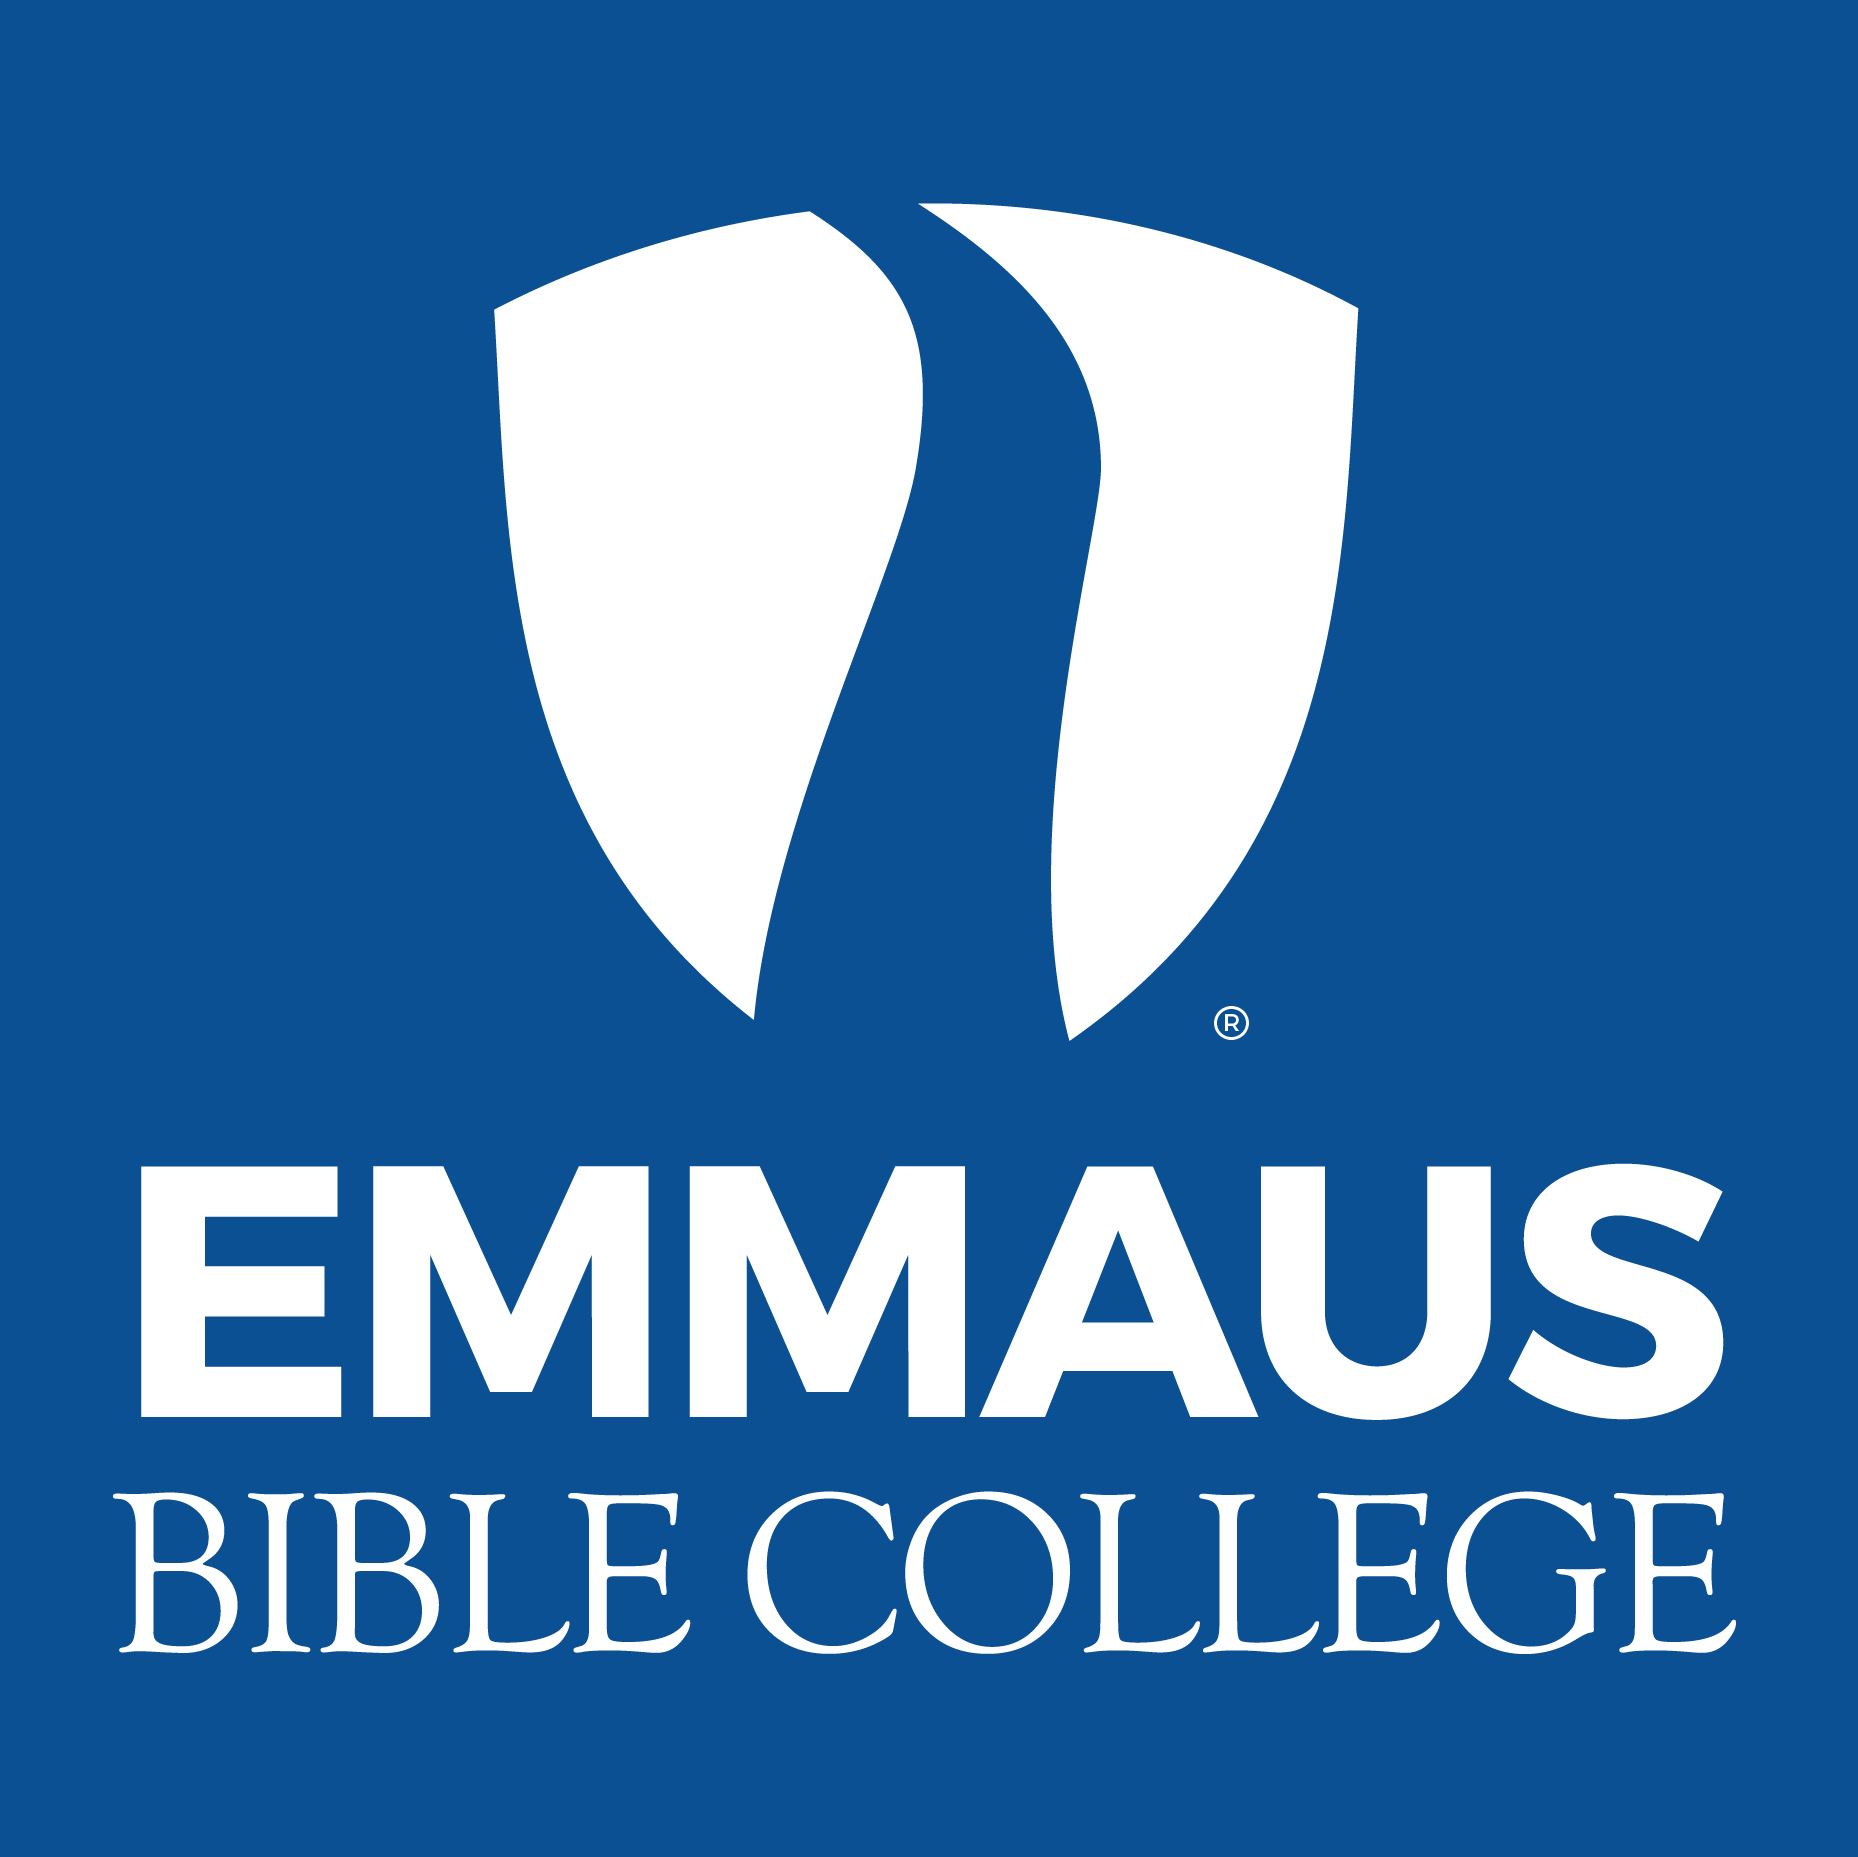 White Vertical Trademarked Emmaus logo on blue background